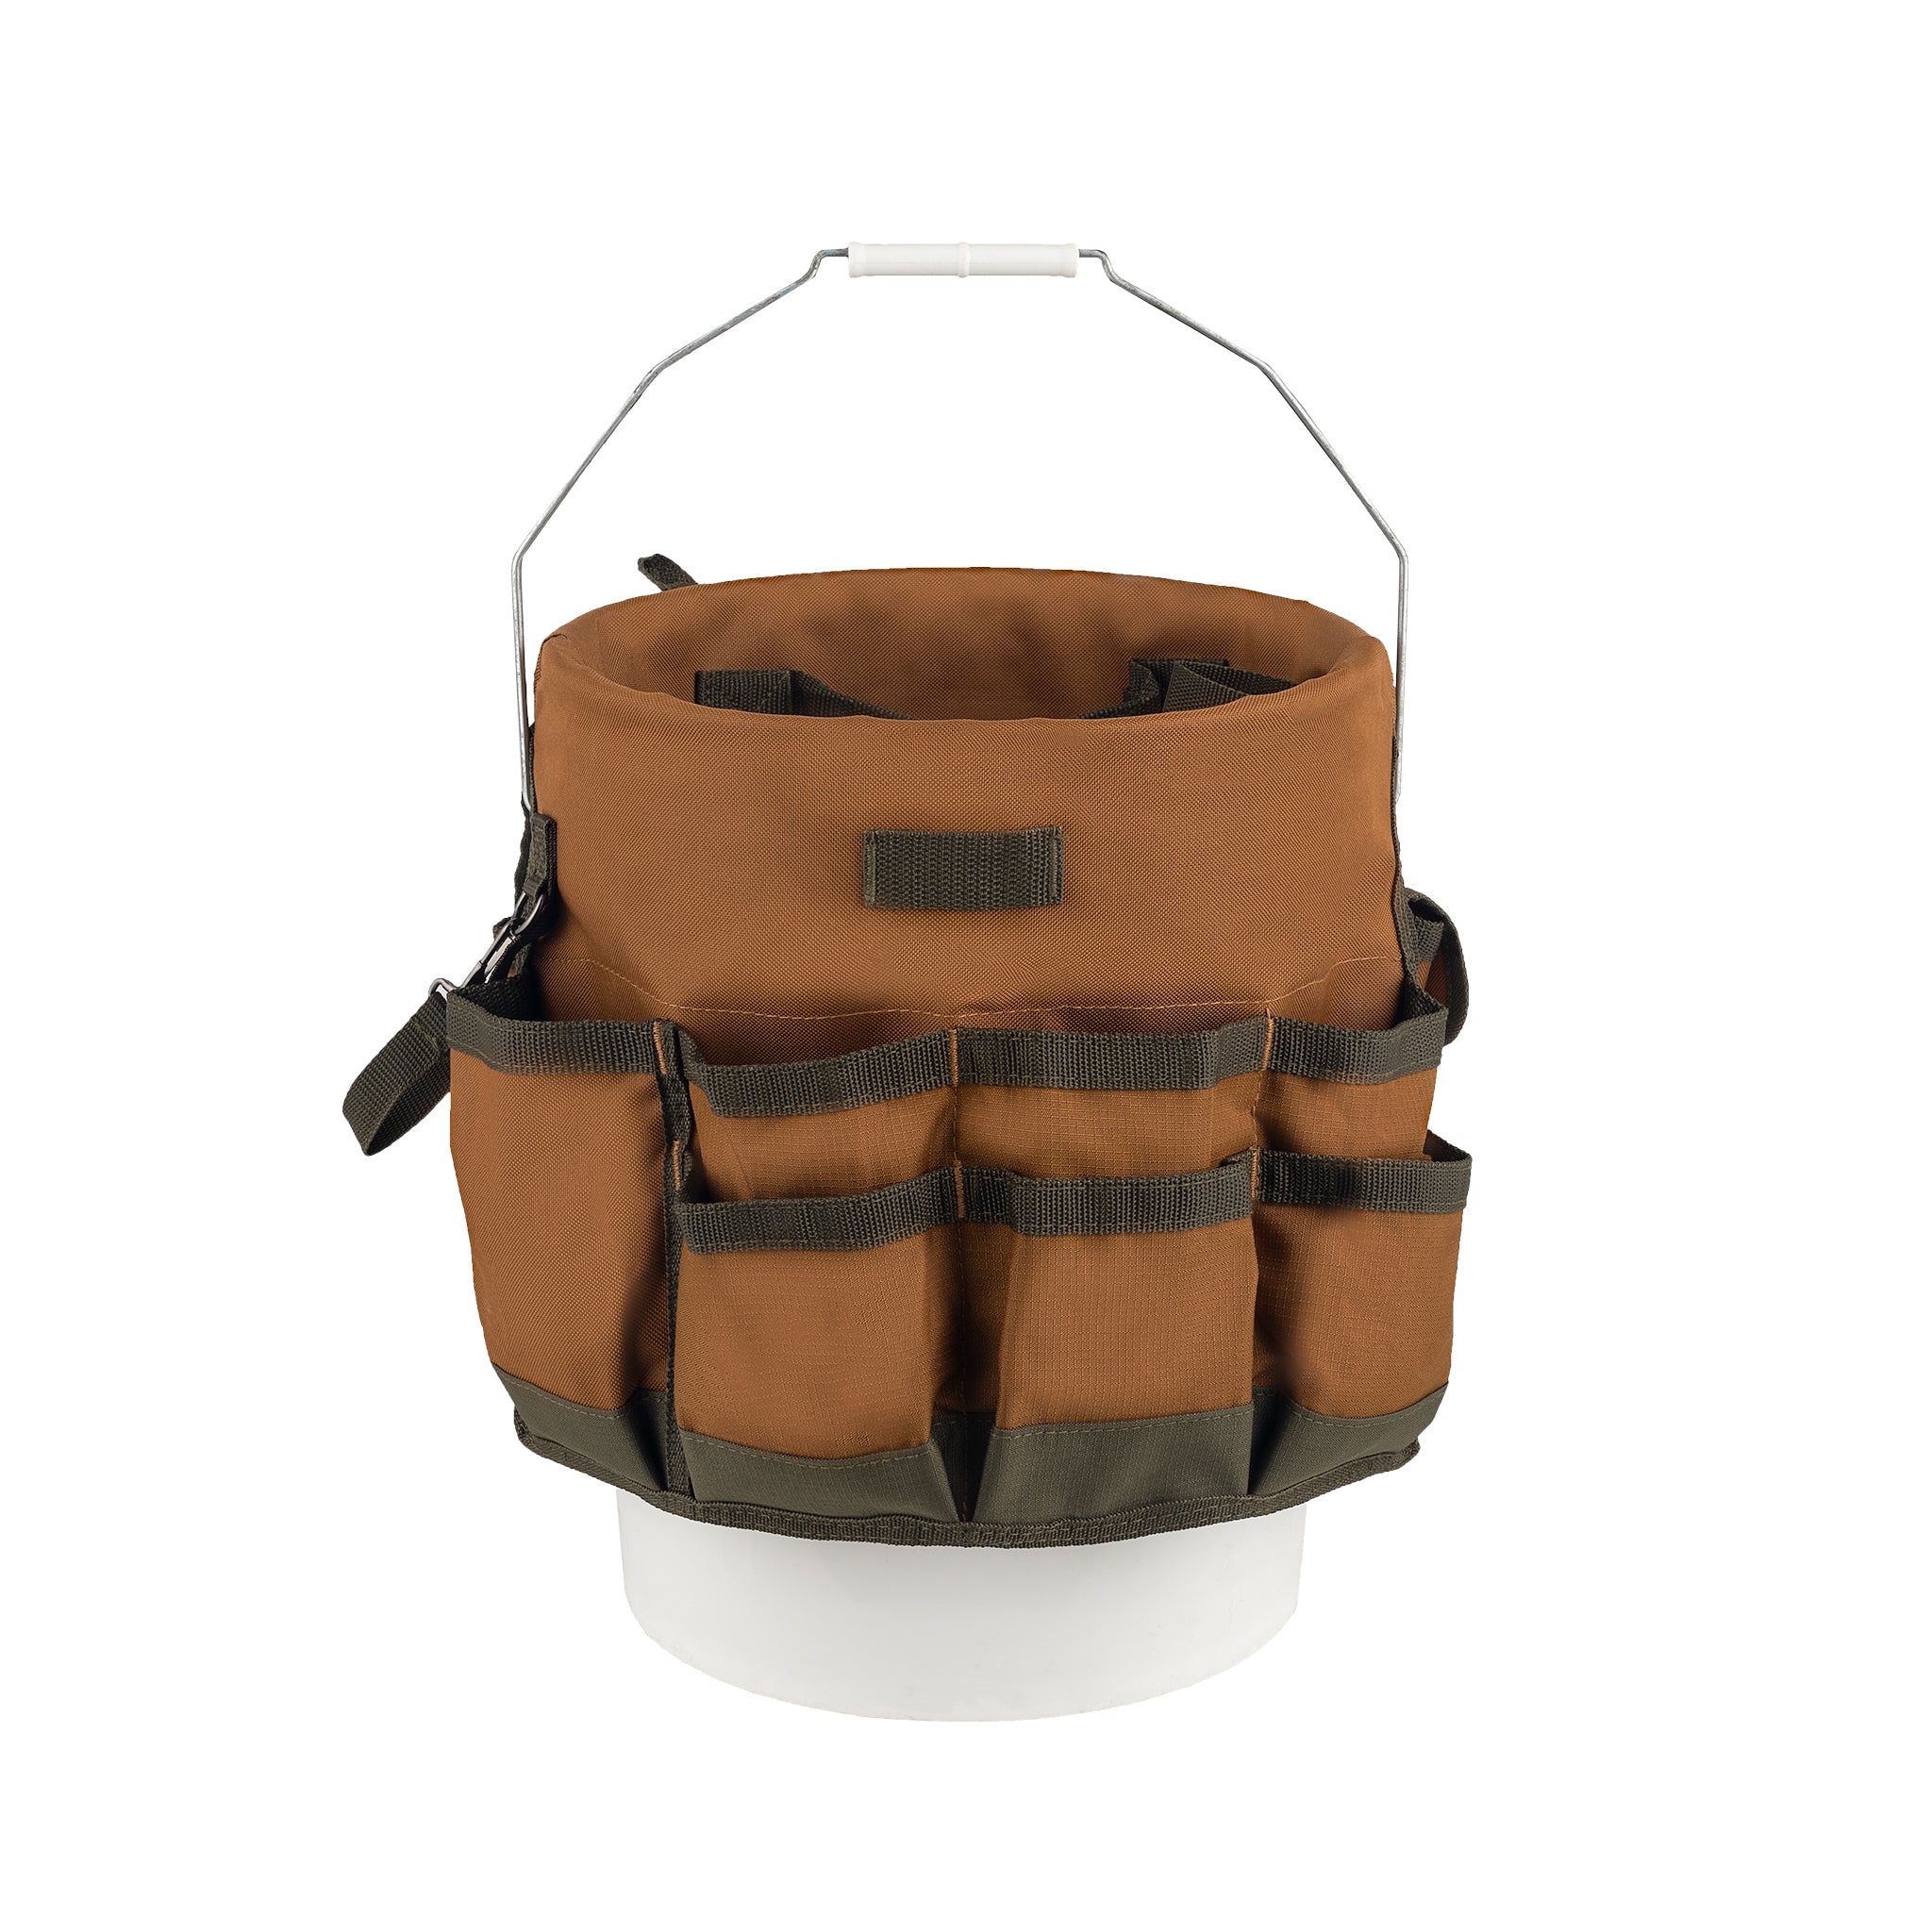 Bucket Boss Gatemouth 13 Tool Bag in Brown, 60013, 8 liters